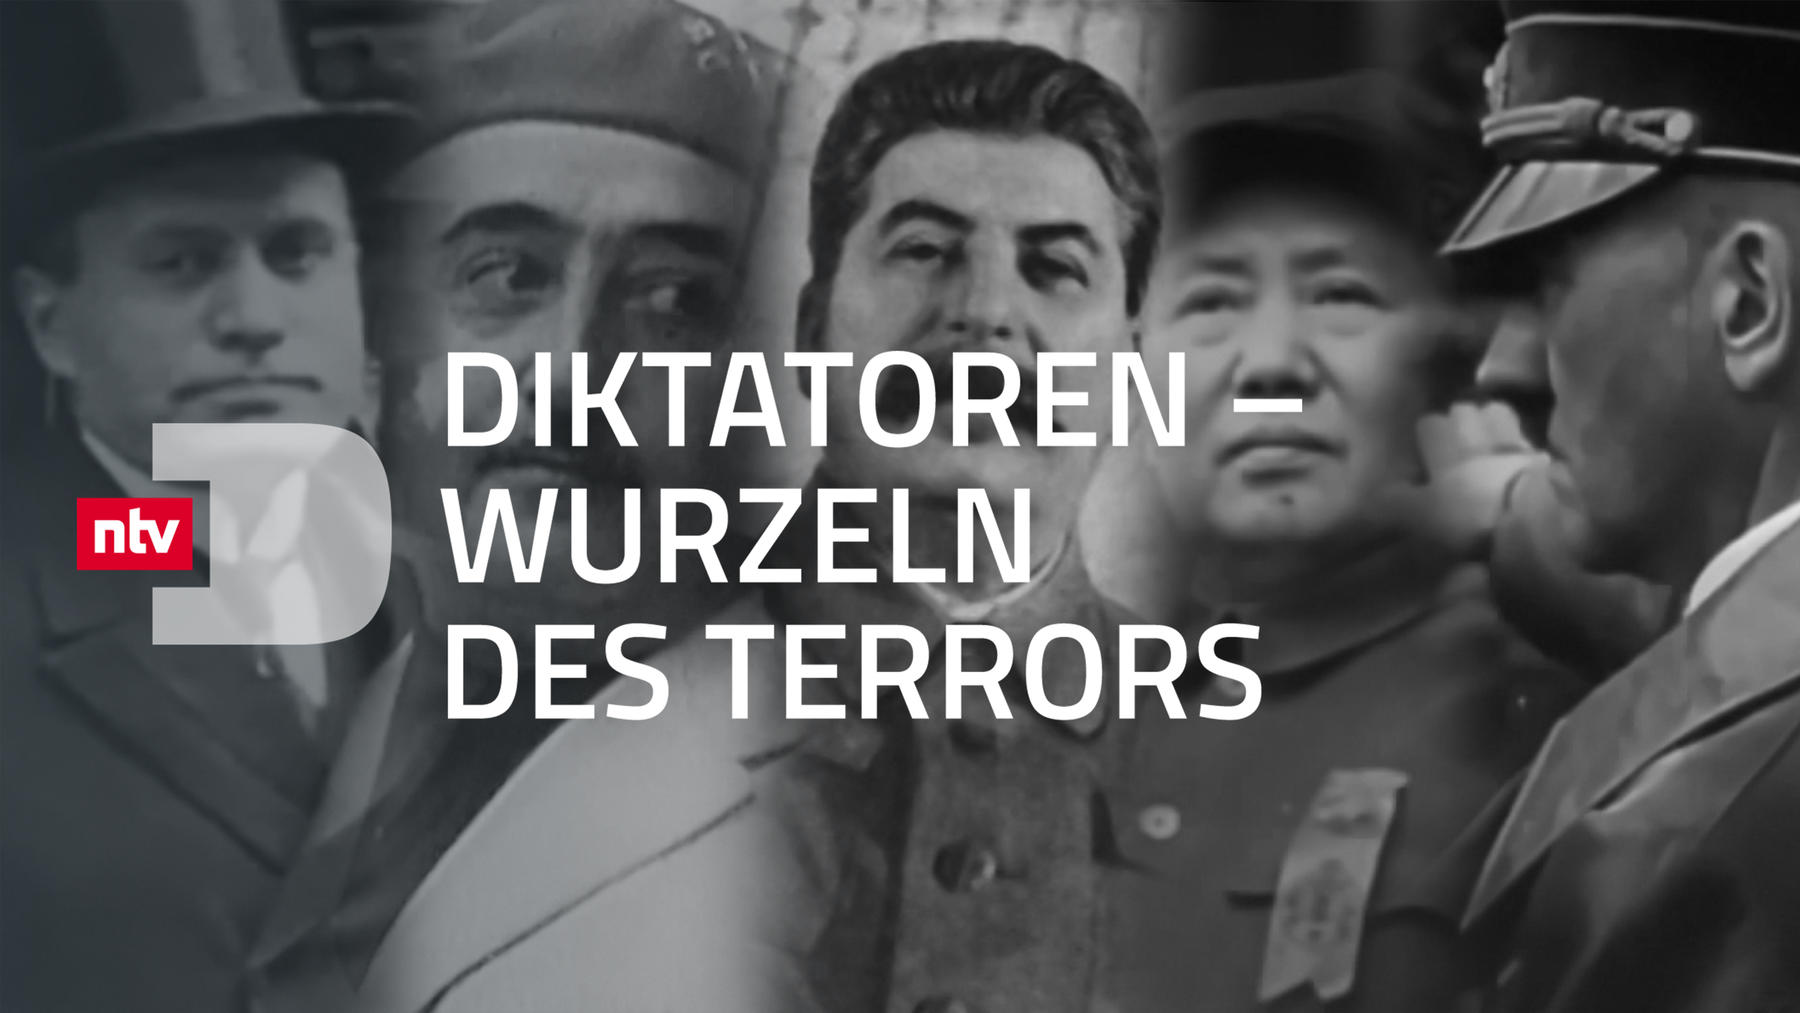 Diktatoren - Wurzeln des Terrors